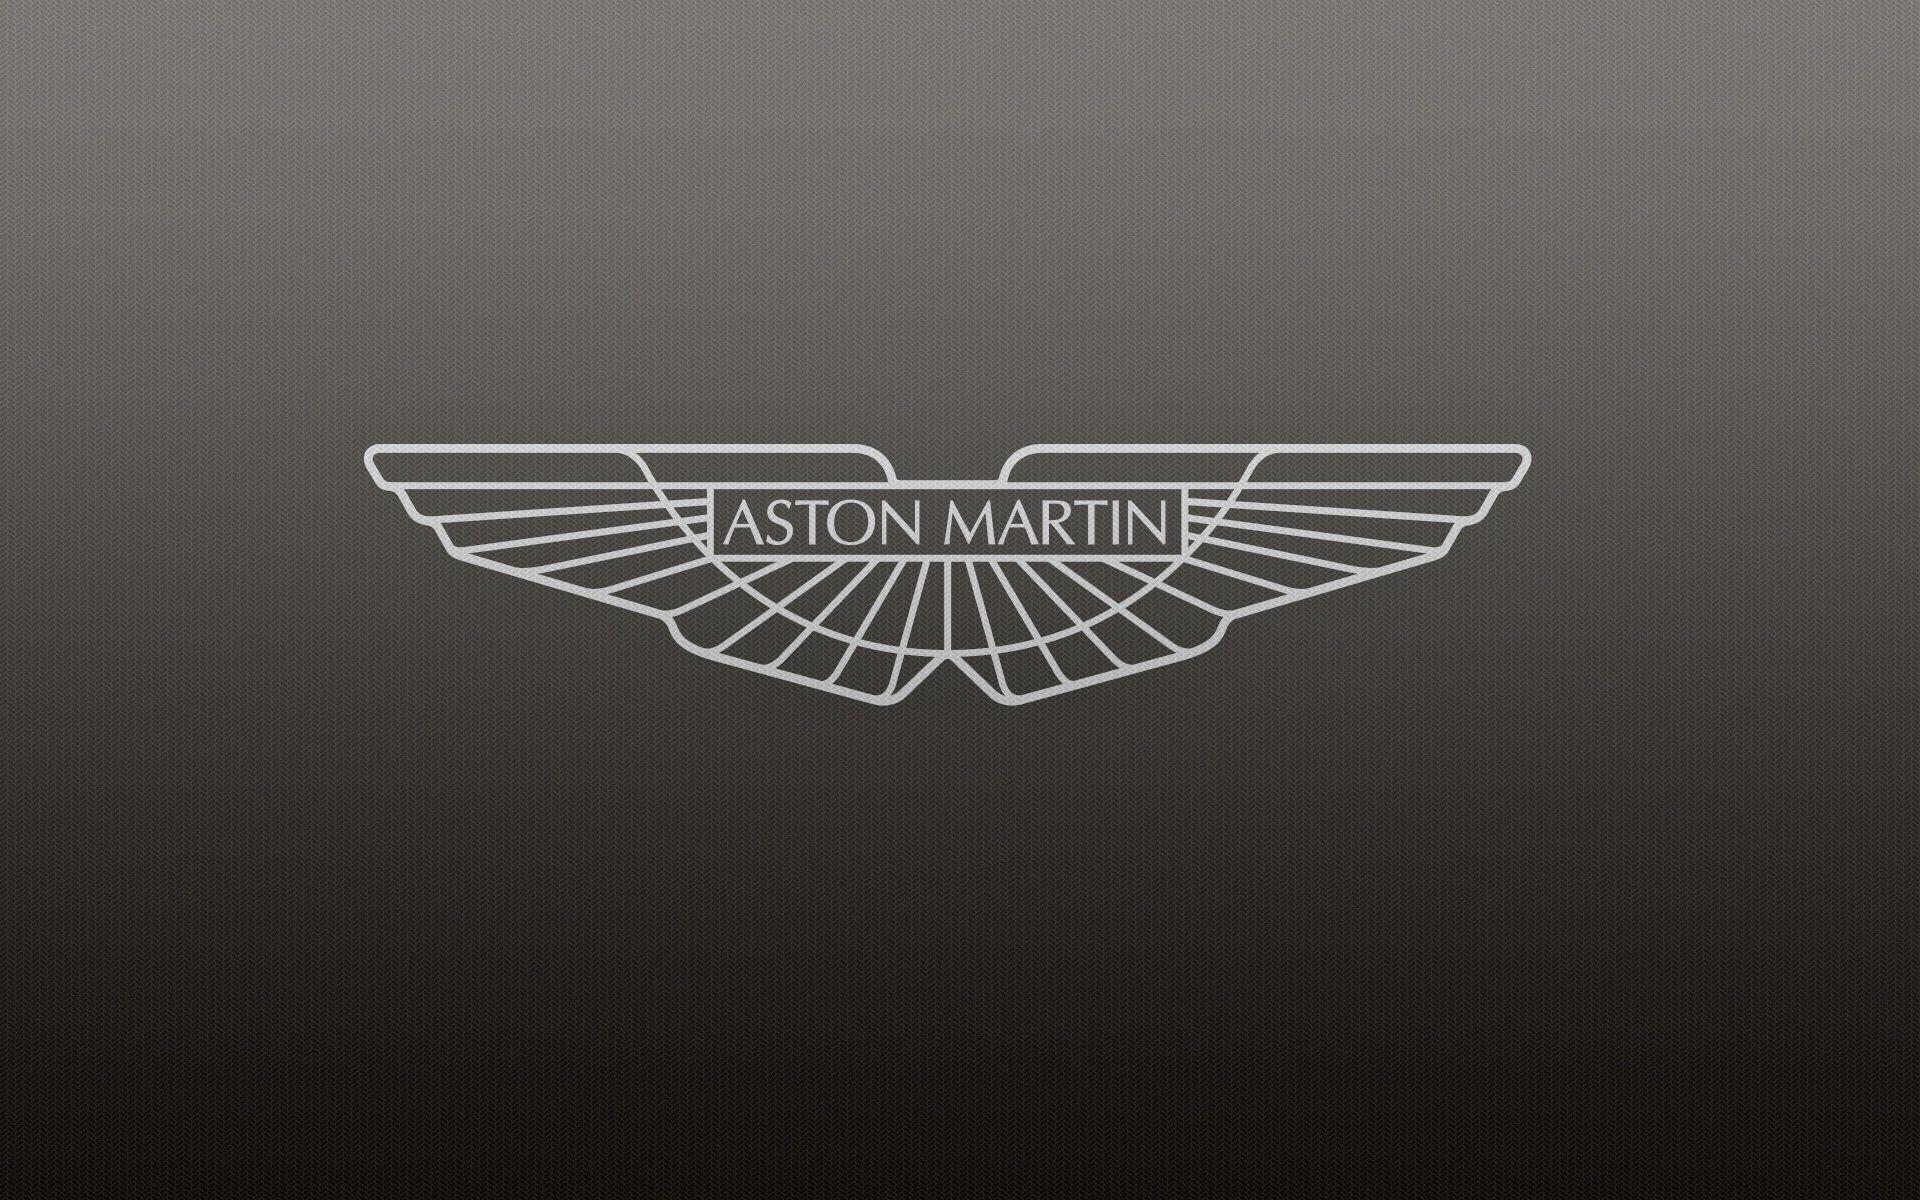 Aston martin logo wallpaper